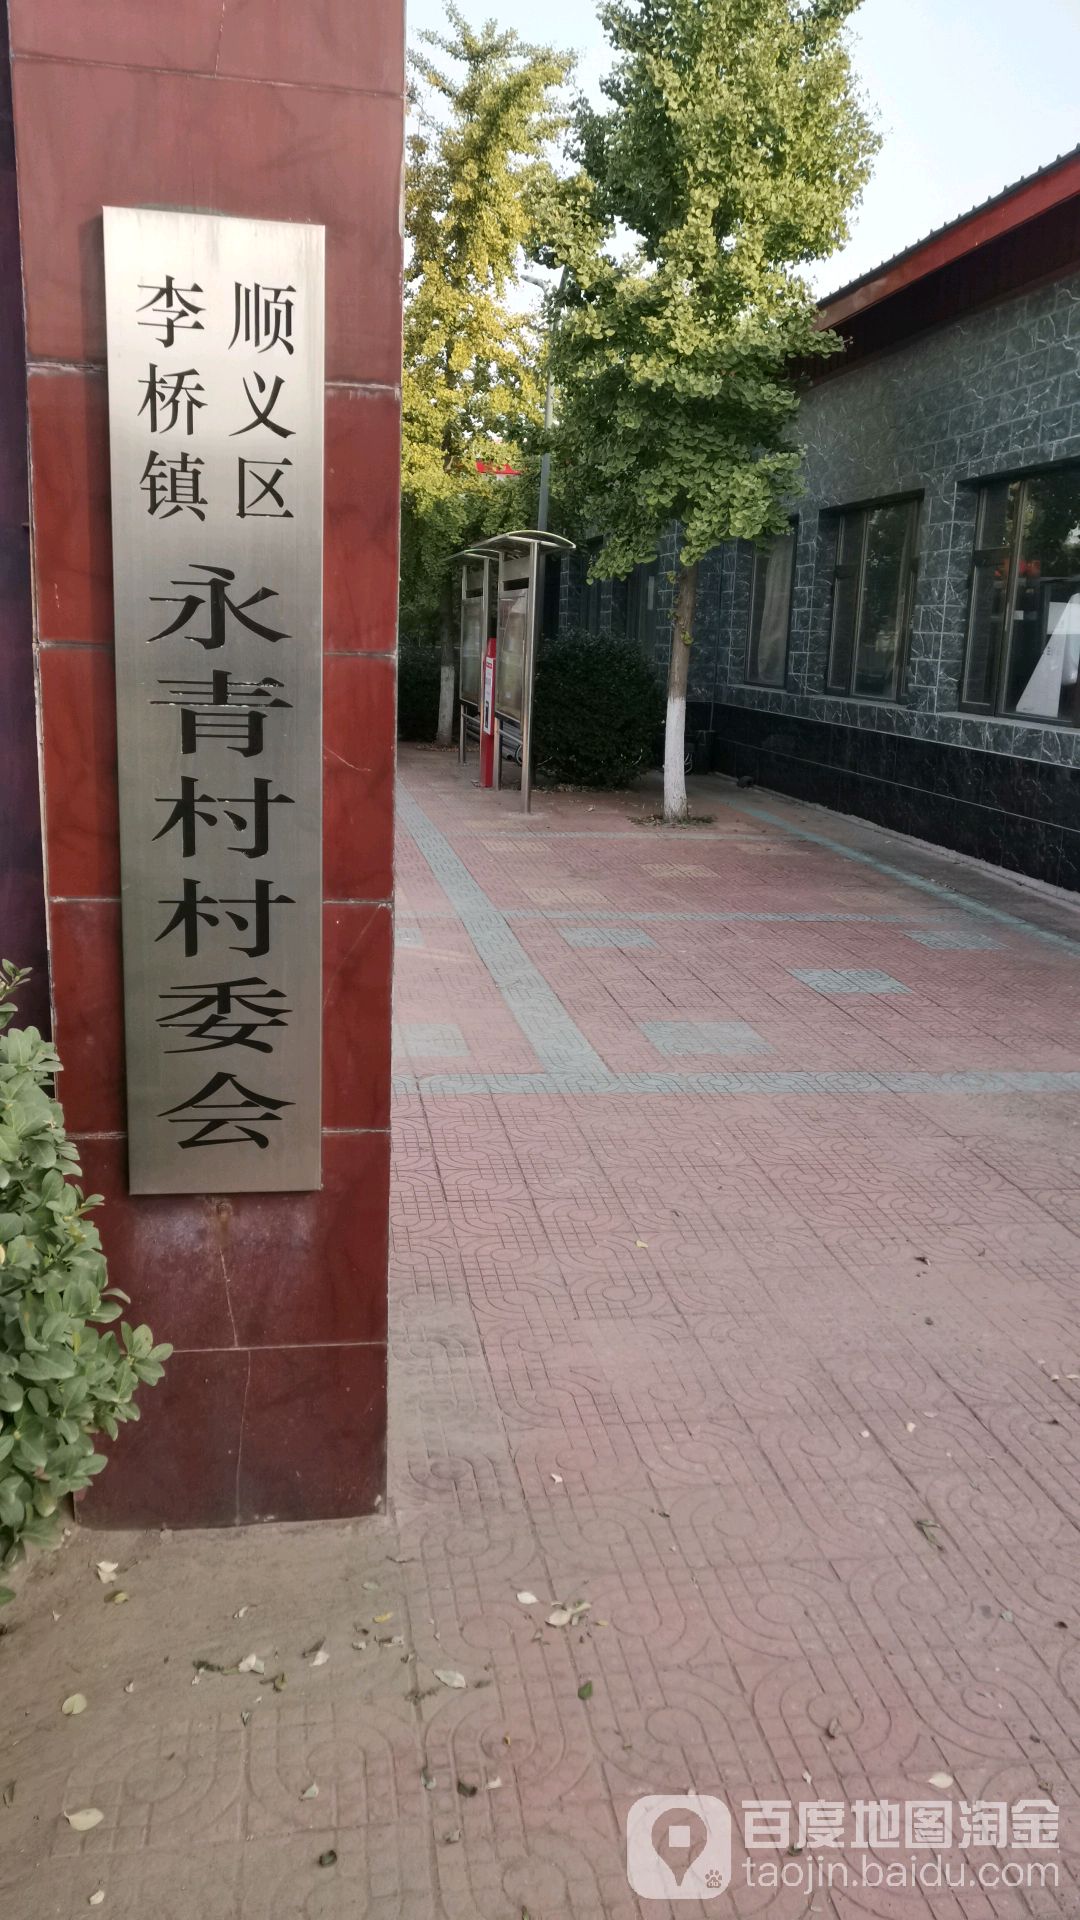 北京市顺义区李桥镇永青村委会(201县道北)